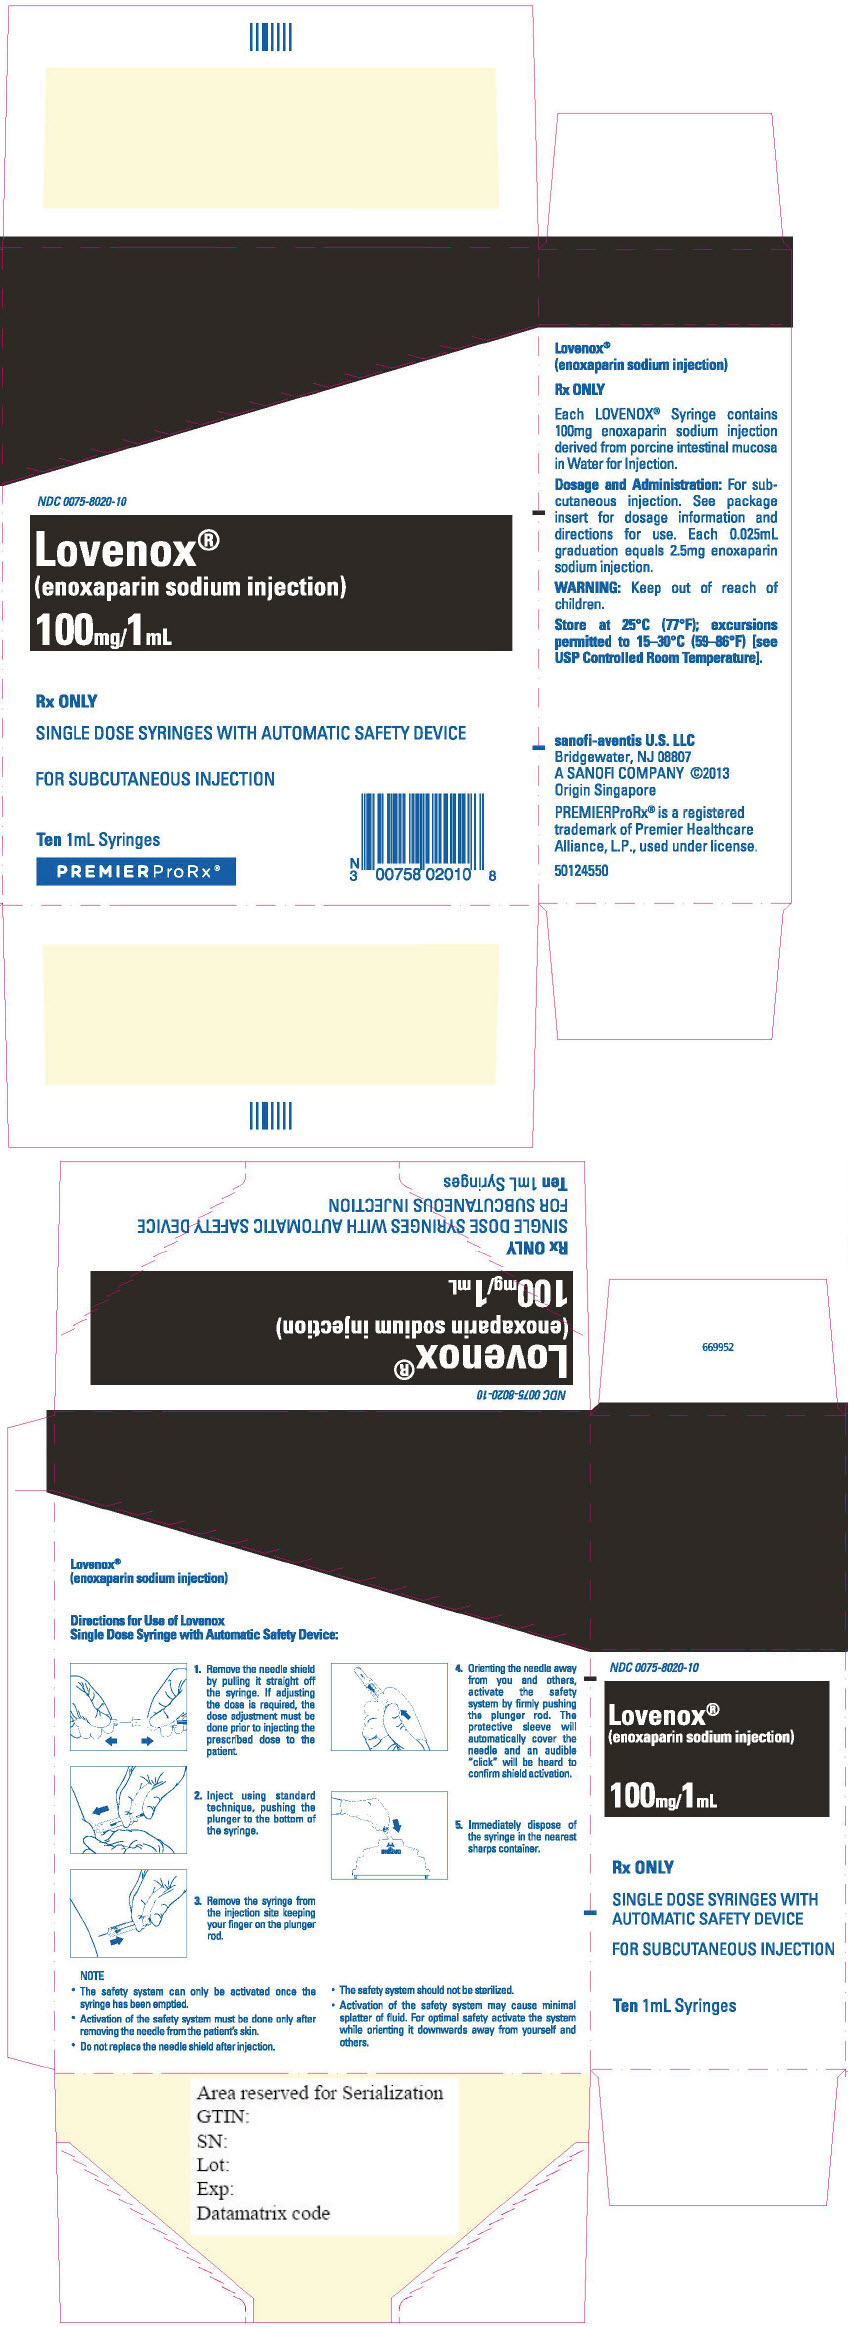 Principal Display Panel - 100 mg/1 mL Syringe Blister Pack Carton